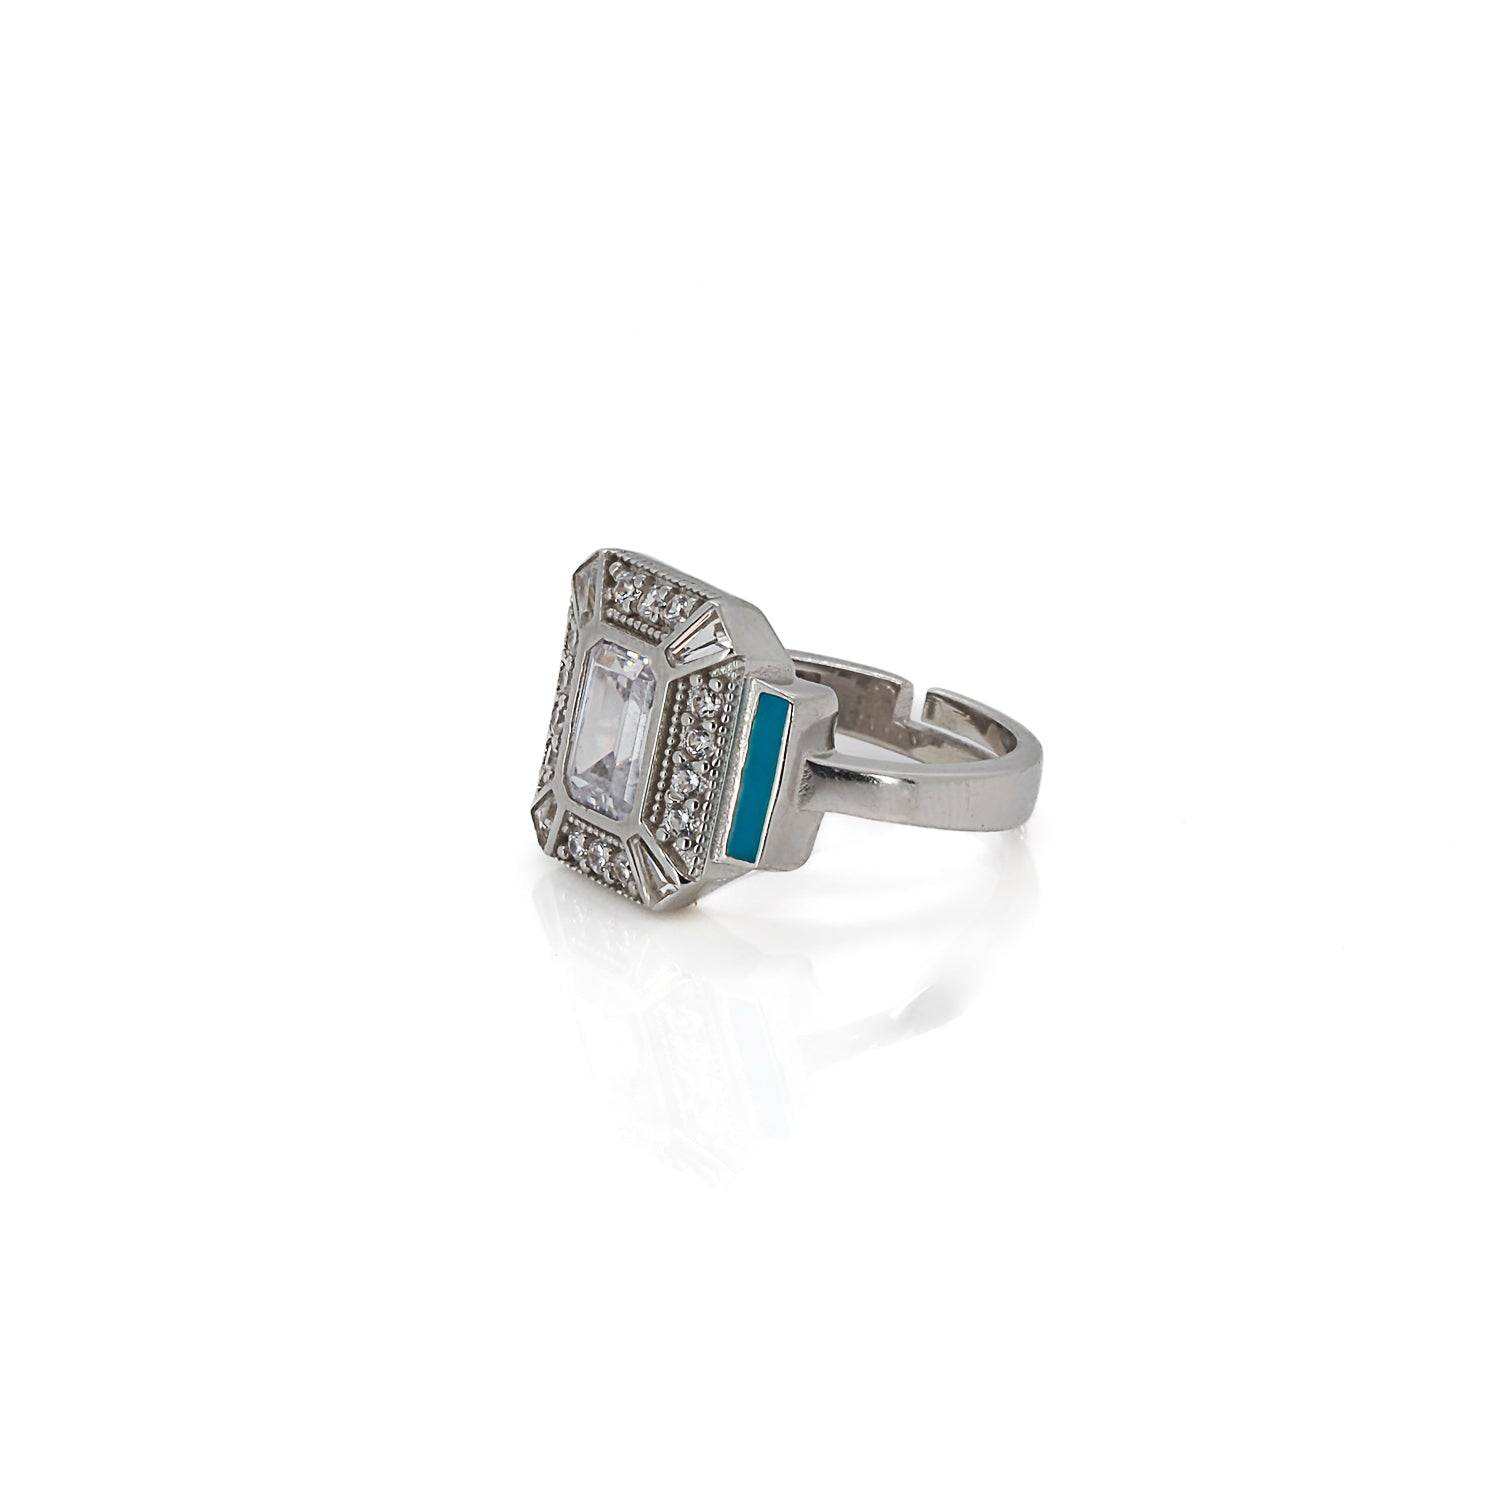 Captivating Diamond &amp; Enamel Ring - Adjustable and Stylish